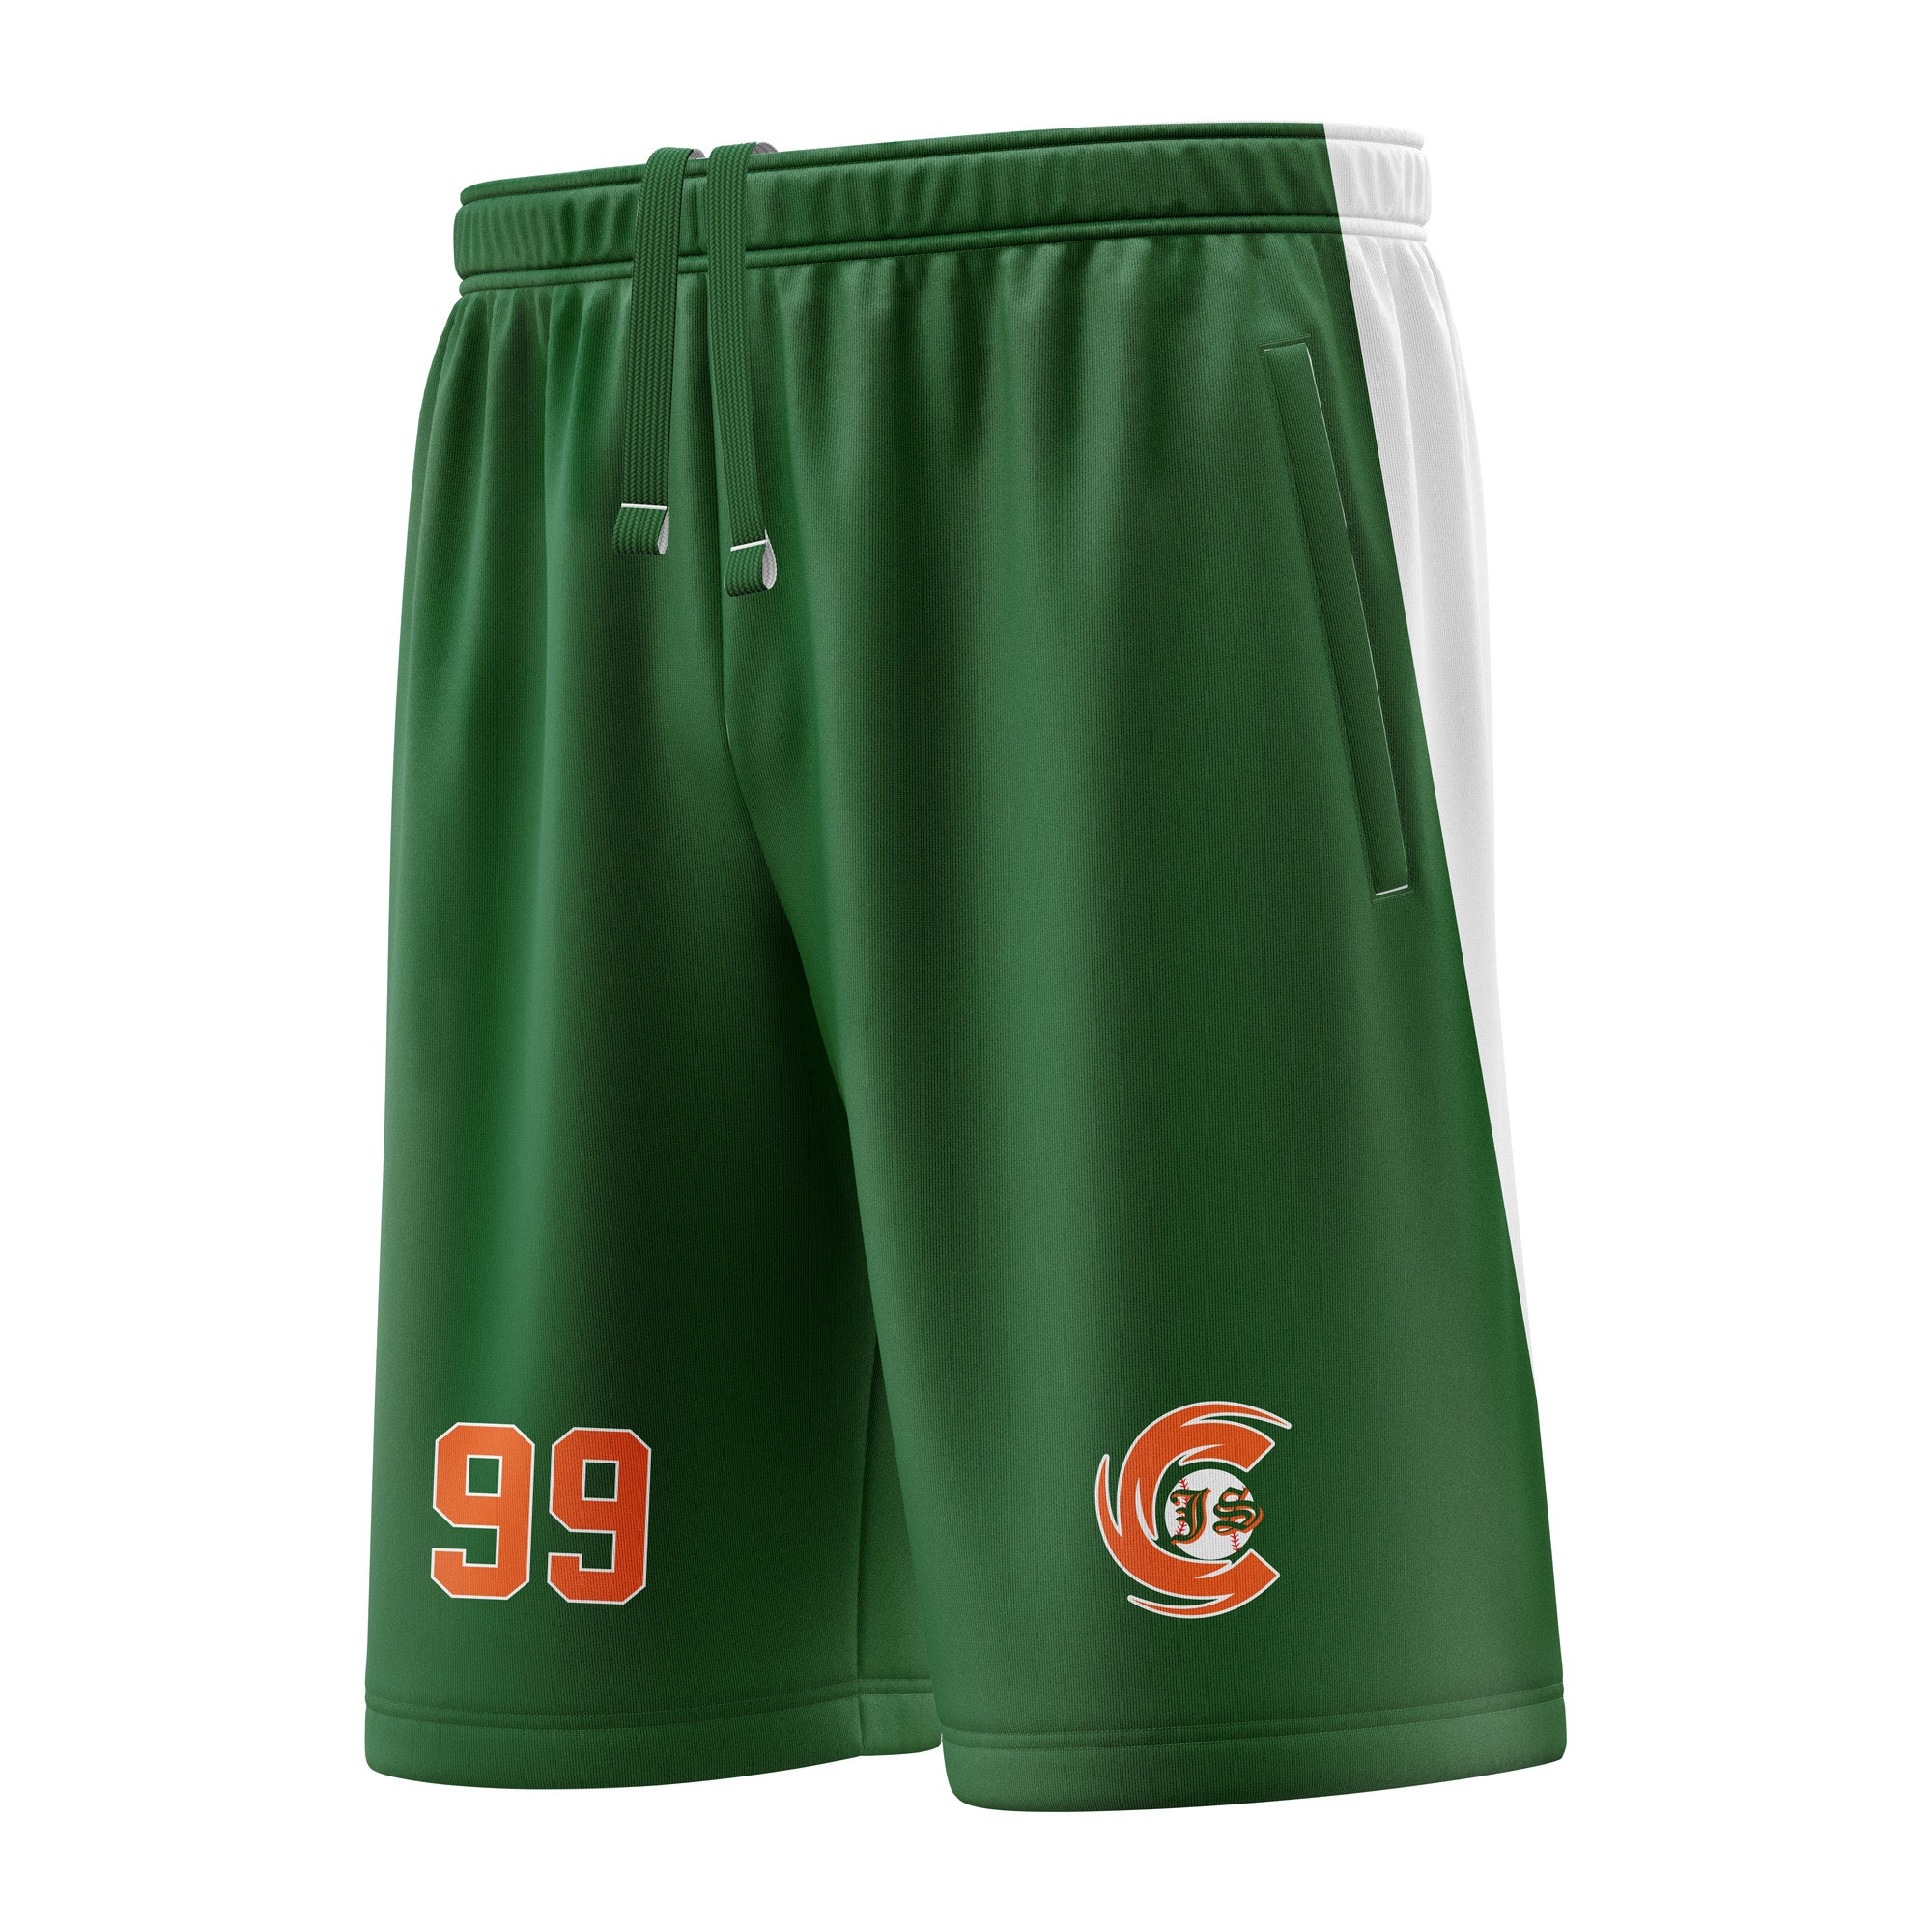 JS Canes Baseball Full Dye Sublimated Shorts